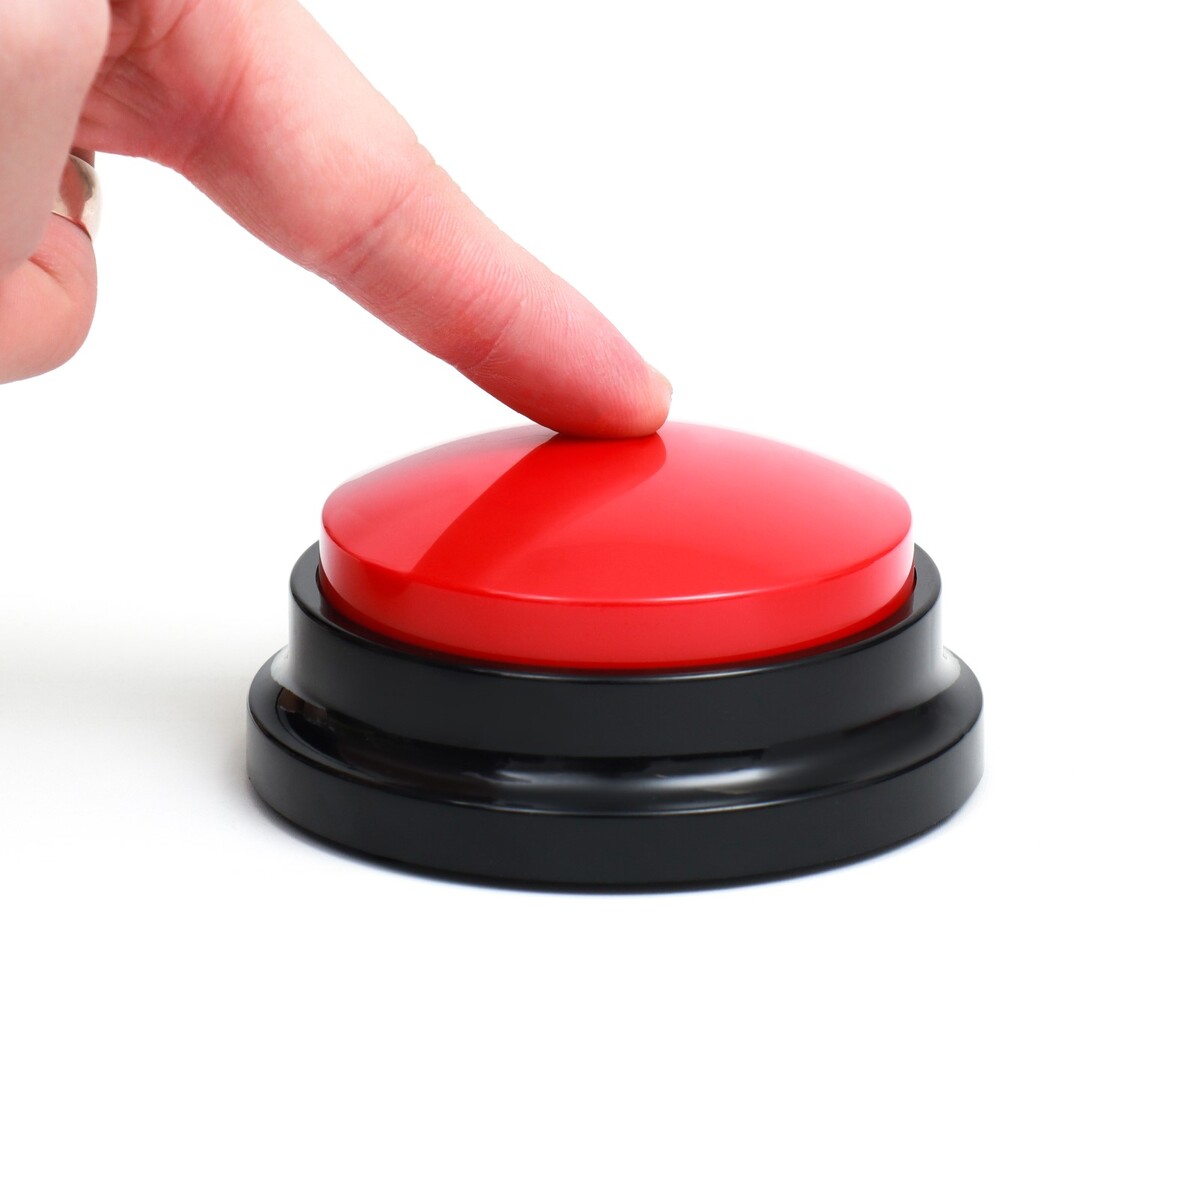 Звуковая кнопка - кликер для дрессировки животных, 9 х 9 х 5, см. красная звуковая кнопка кликер для дрессировки животных 9 х 9 х 5 см голубая